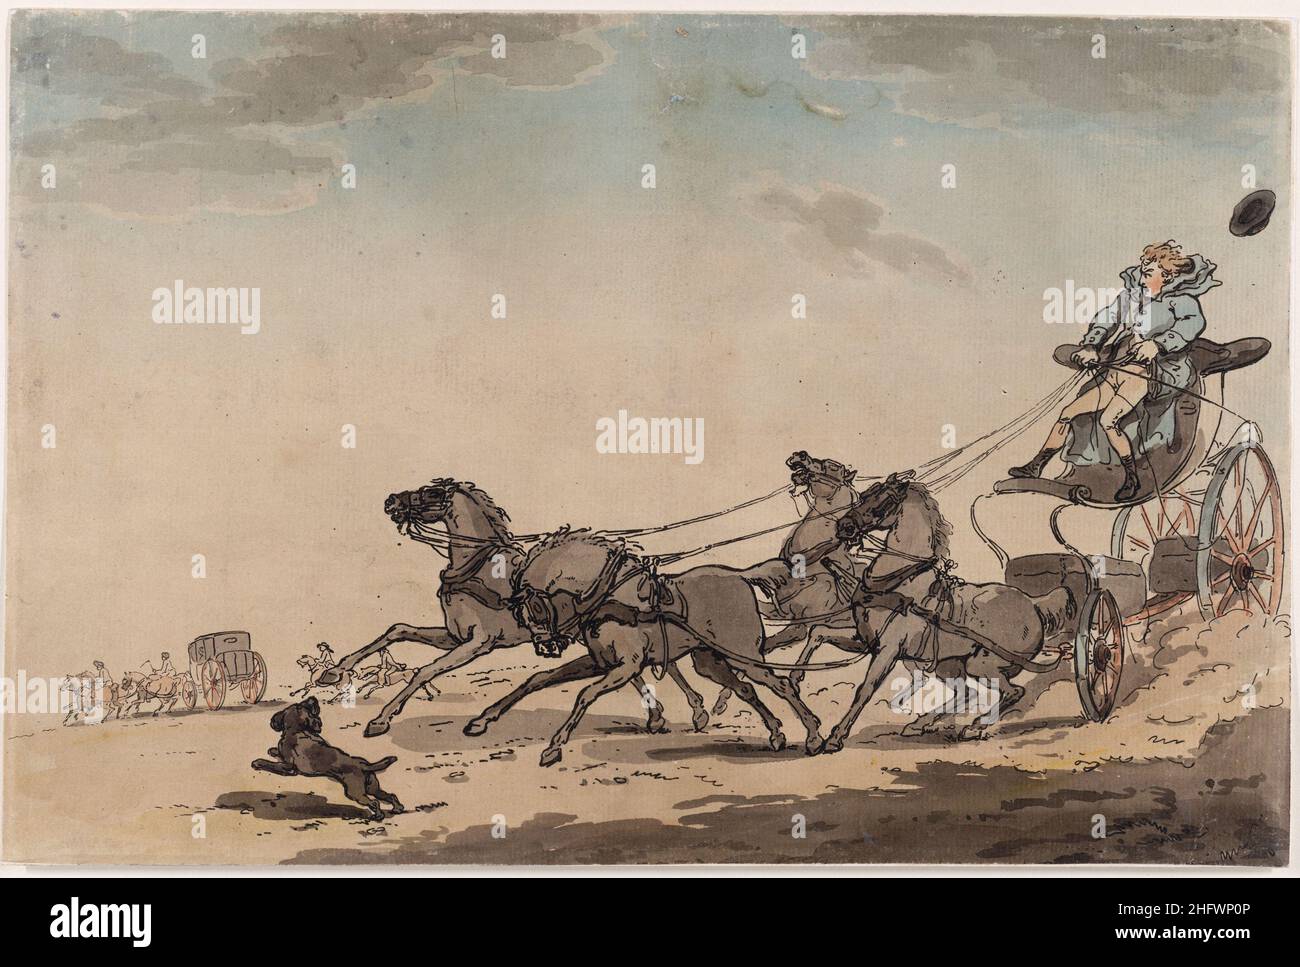 Un quattro in mano, o il carro di fuga. Artista: Thomas Rowlandson (1756-1827) artista e caricaturista inglese dell'epoca georgiana. Osservatore sociale, è stato un artista prolifico e tipografo. Credit: Thomas Rowlandson/Alamy Foto Stock